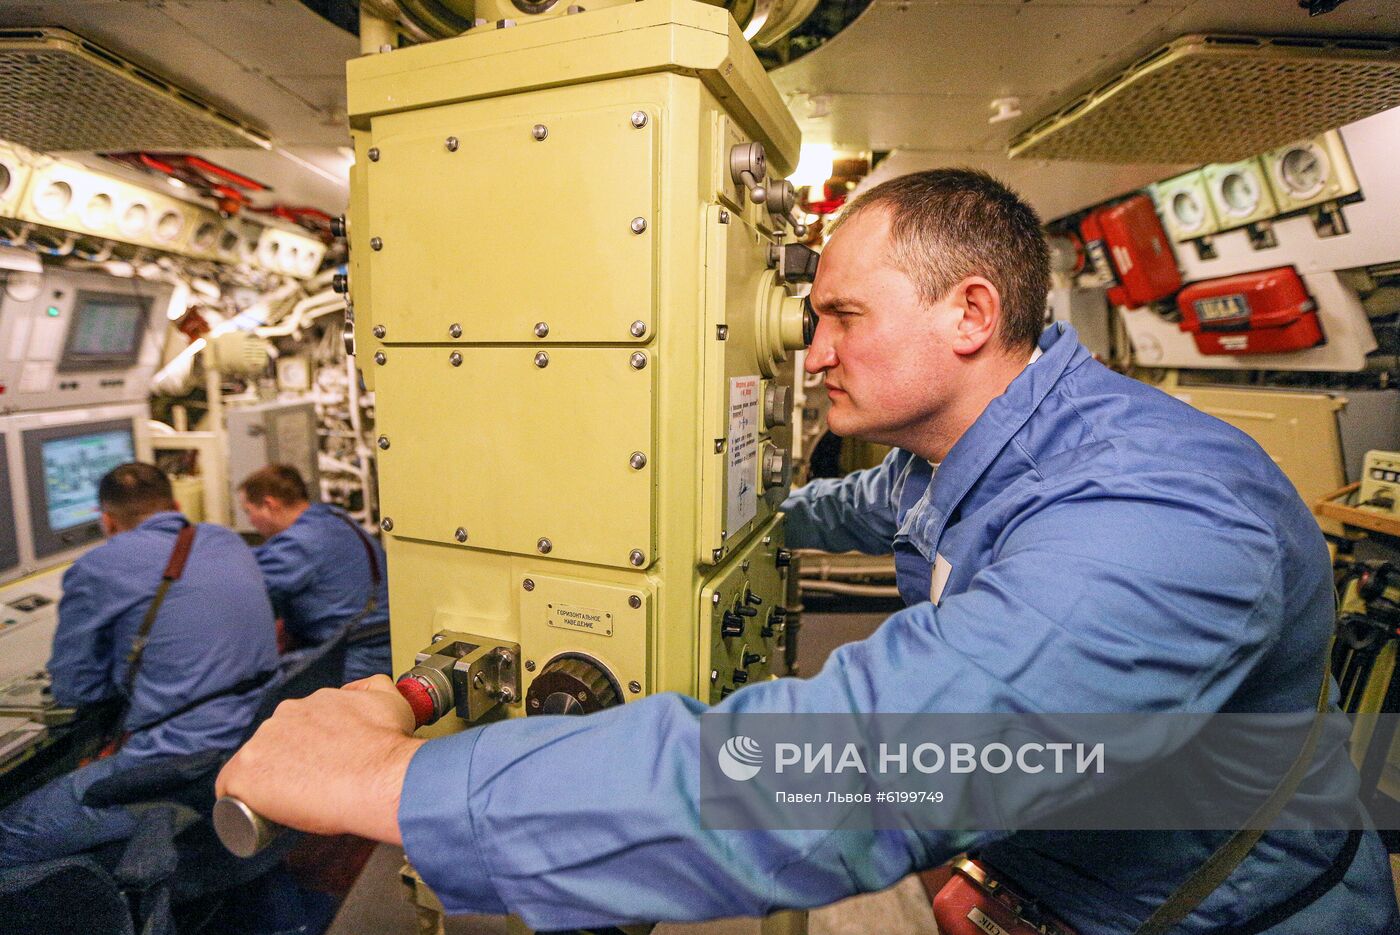 Атомная подводная лодка "Северодвинск"